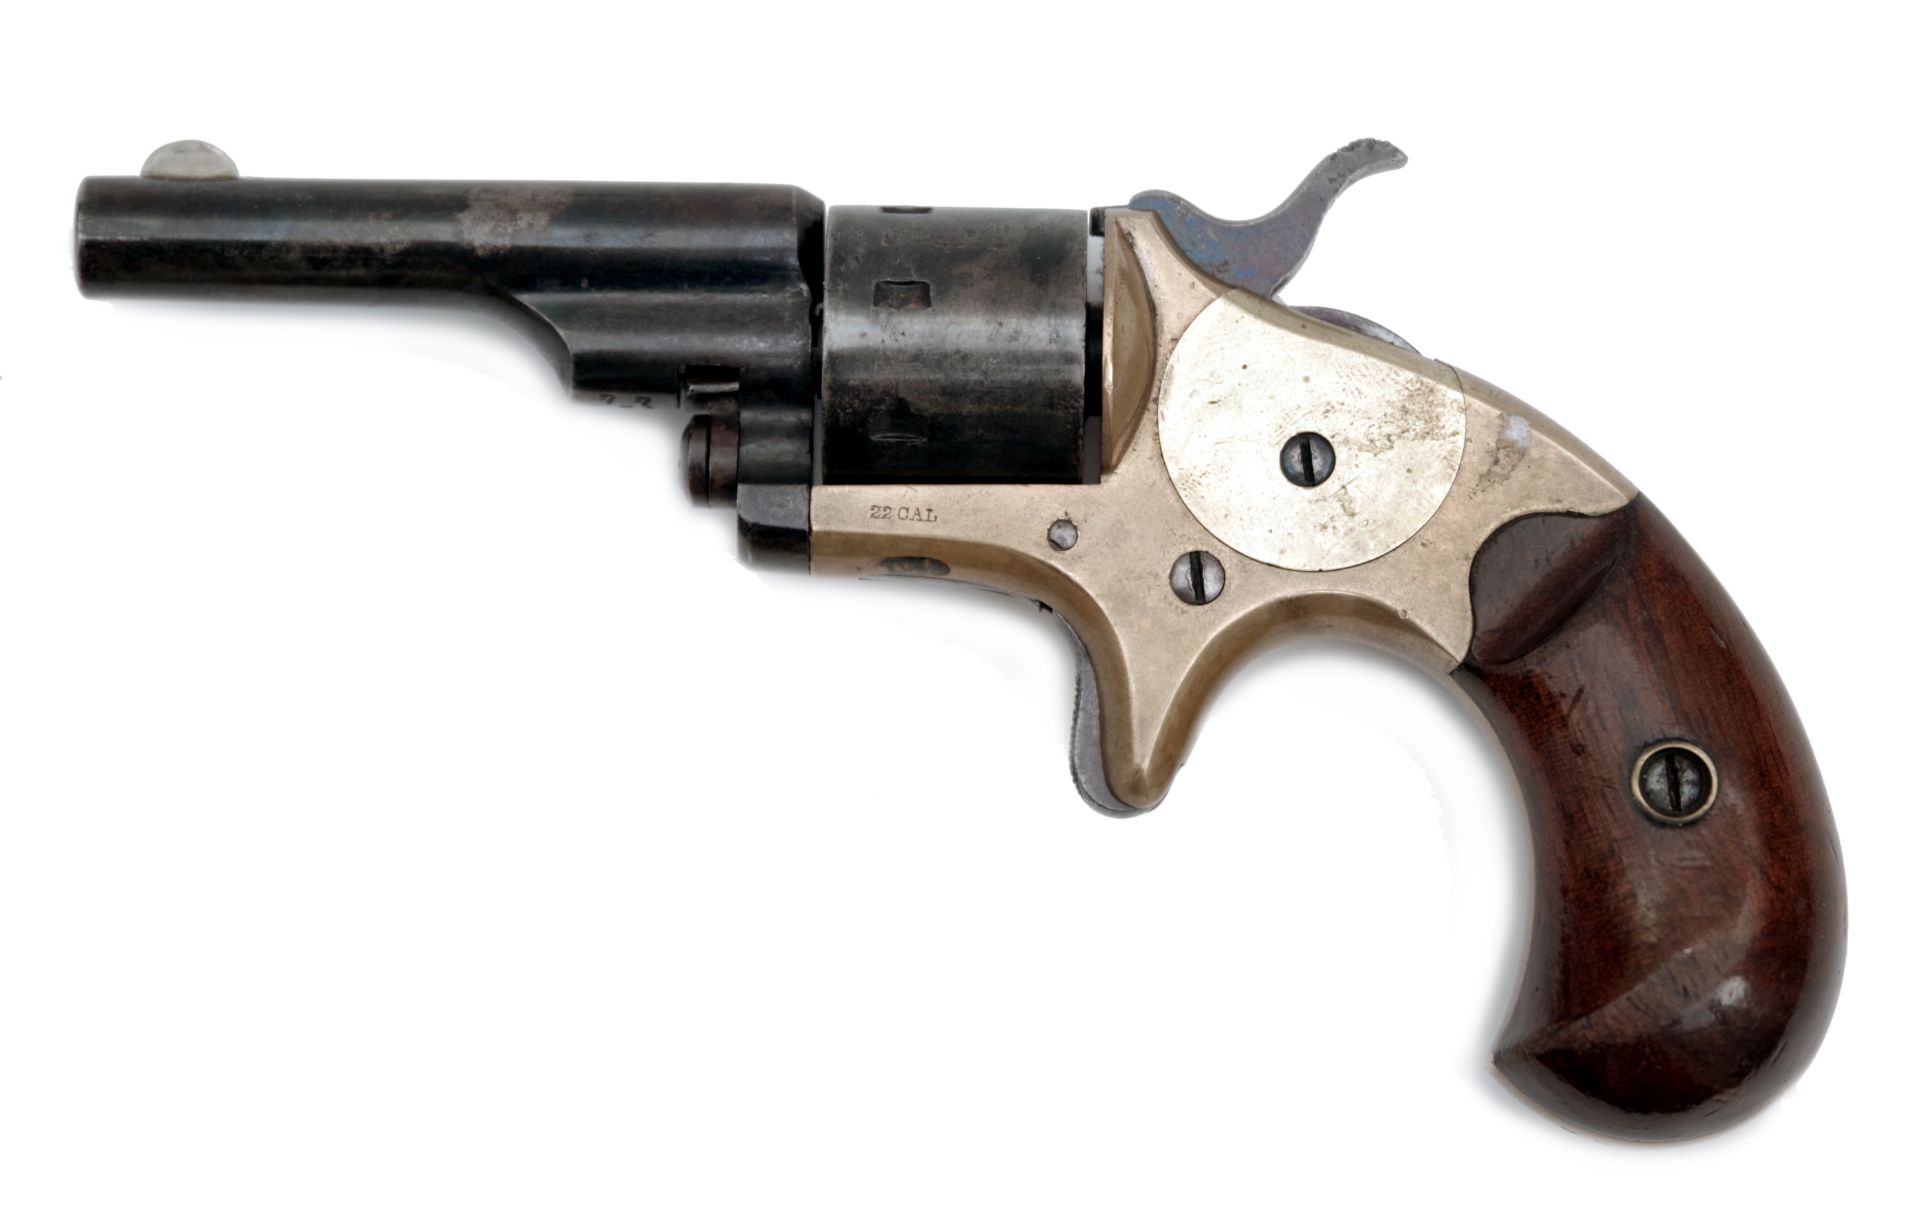 A Colt Open Top Pocket Model Revolver